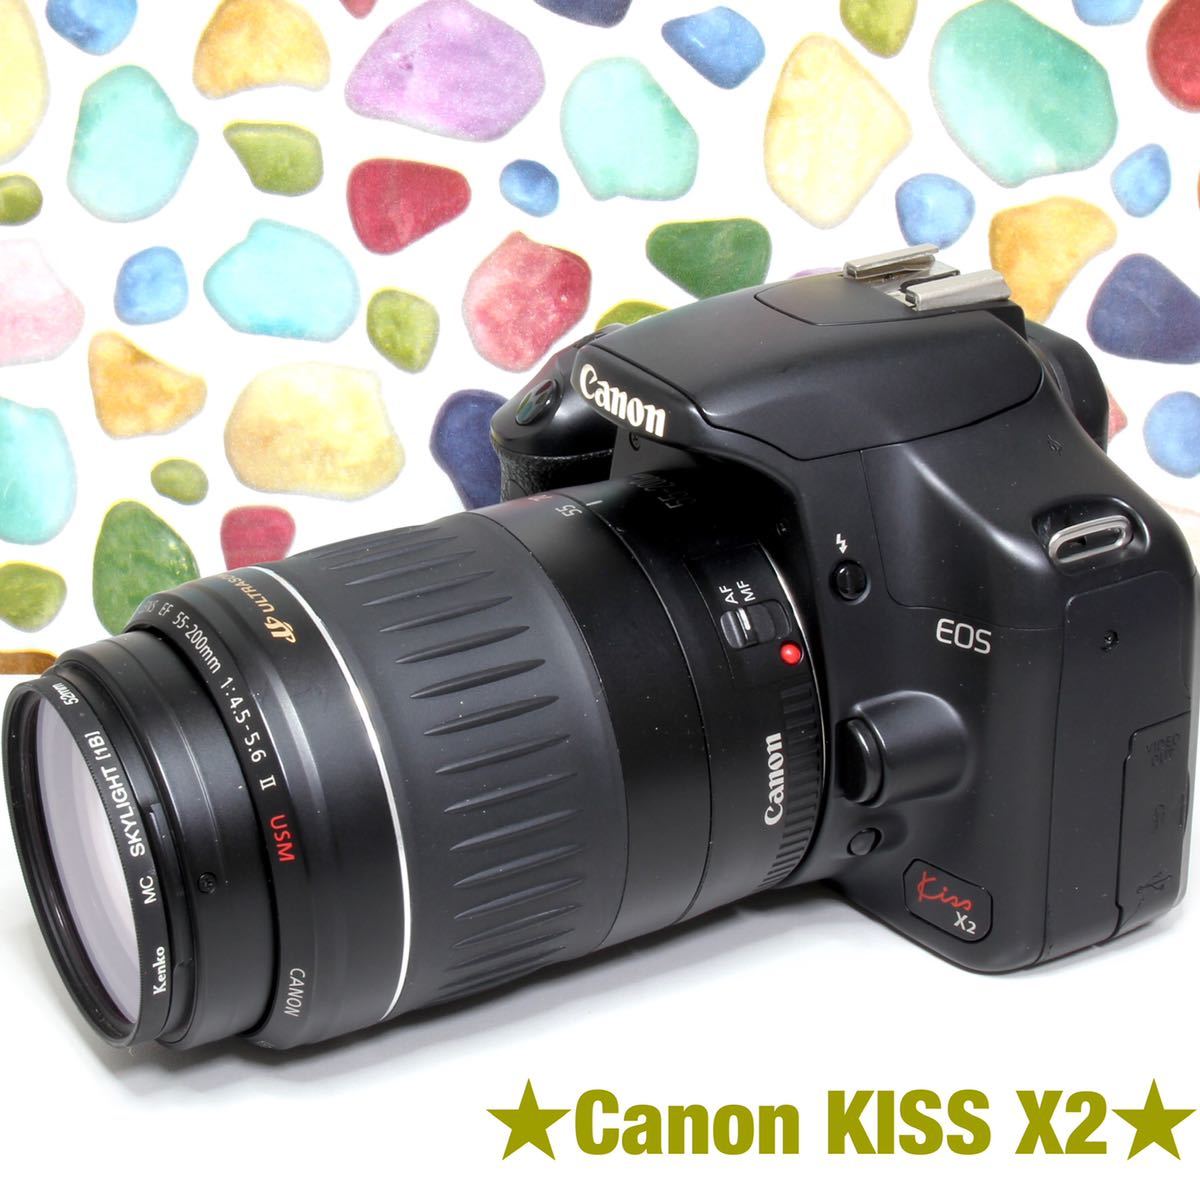 オシャレ特集セール開催 ❤️キャノン Canon kiss X2❤️キャノン デジタル一眼レフ❤️06 デジタルカメラ